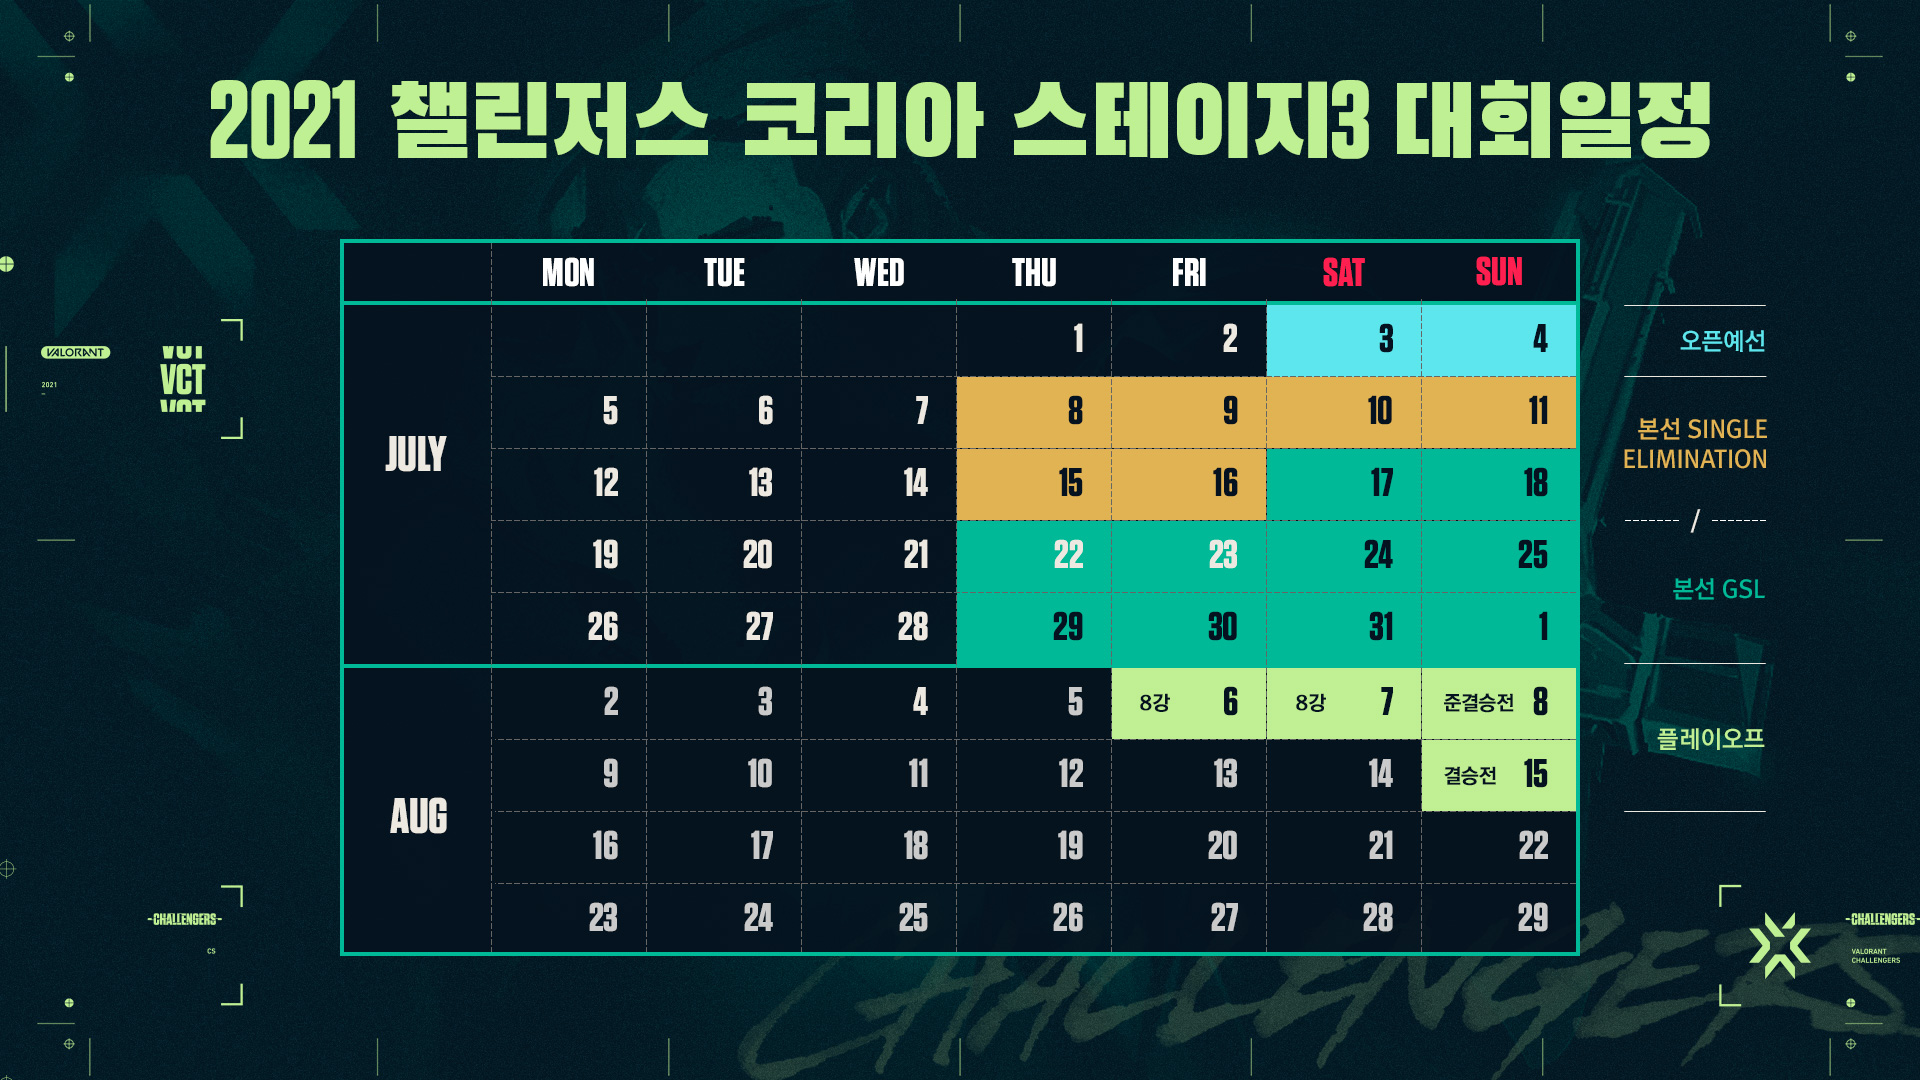 01_Tournament_schedule_re_(2).jpg